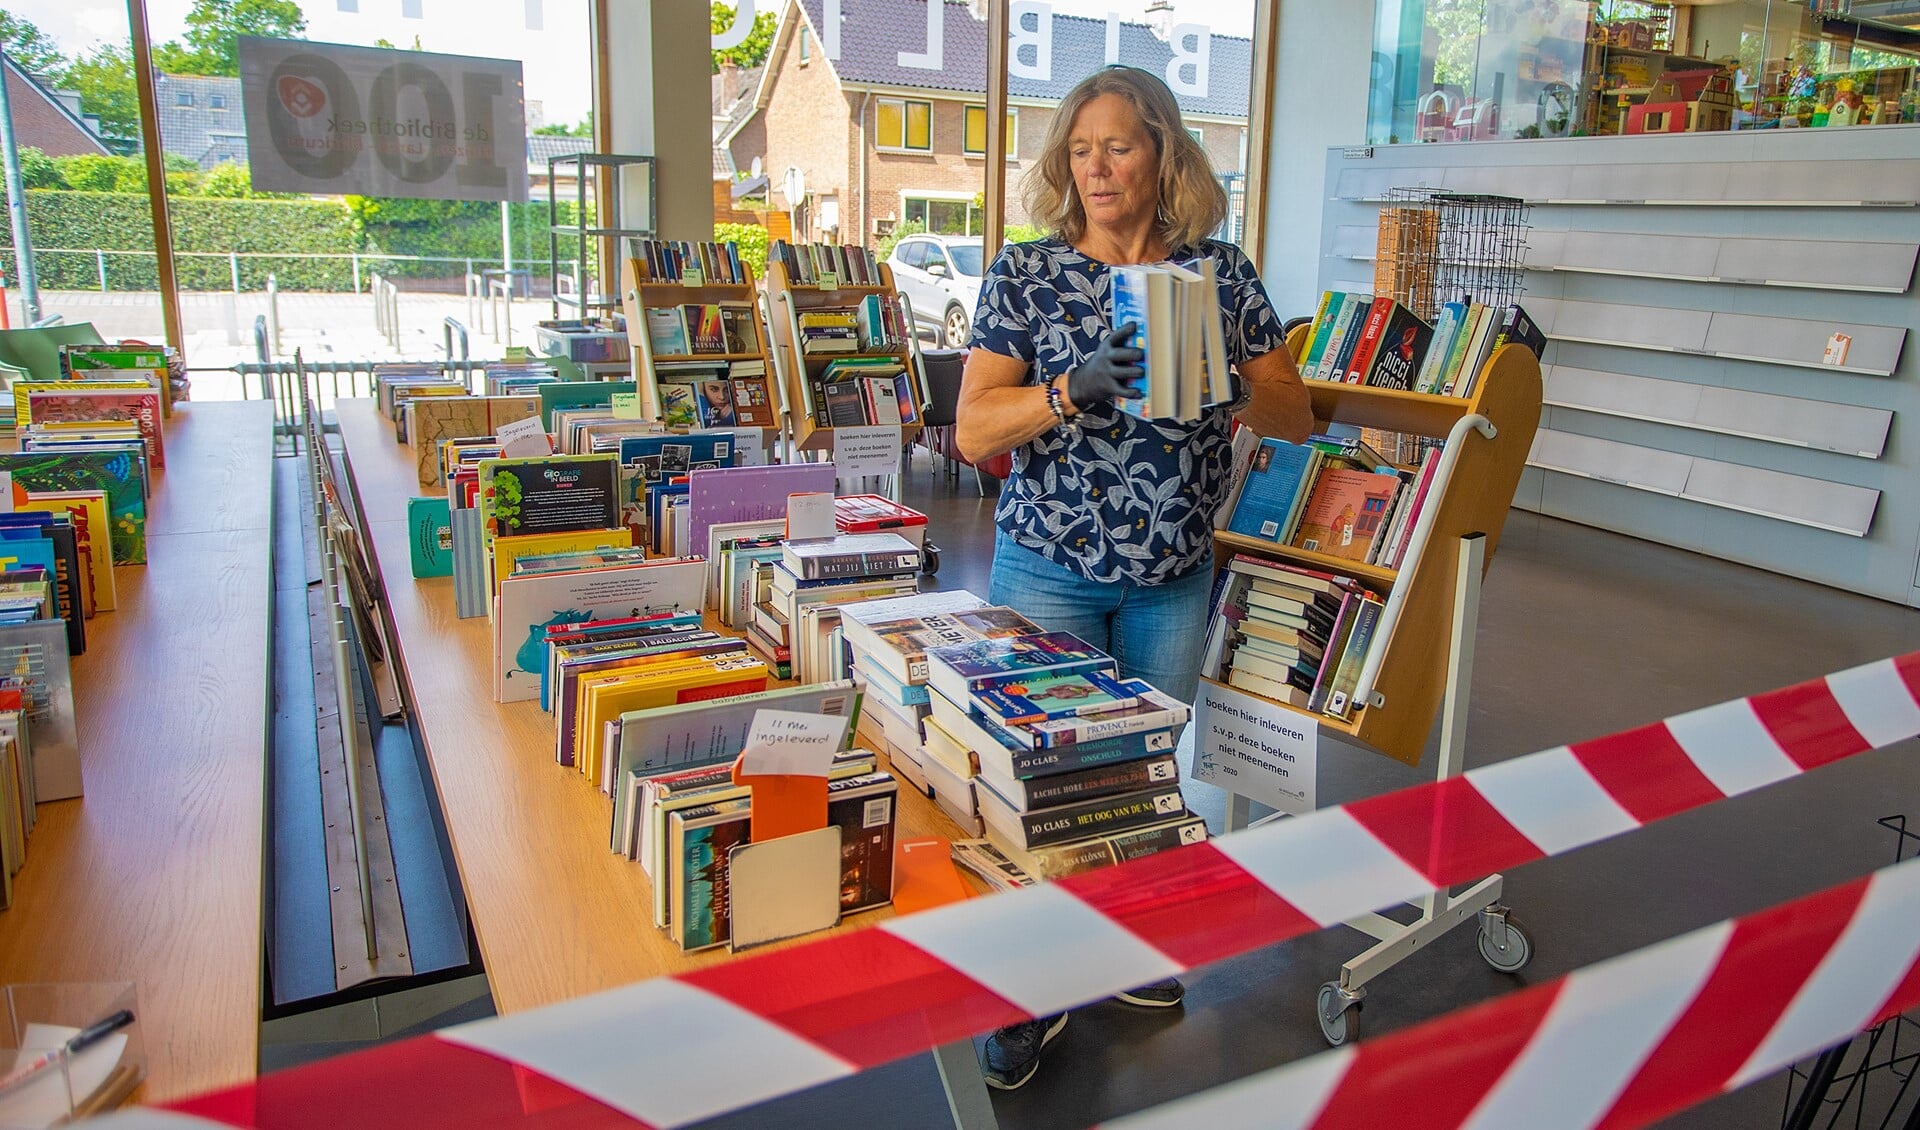 Voor de bibliotheek in Huizen was 2020 een bijzonder jaar vanwege corona en het 100-jarig bestaan.